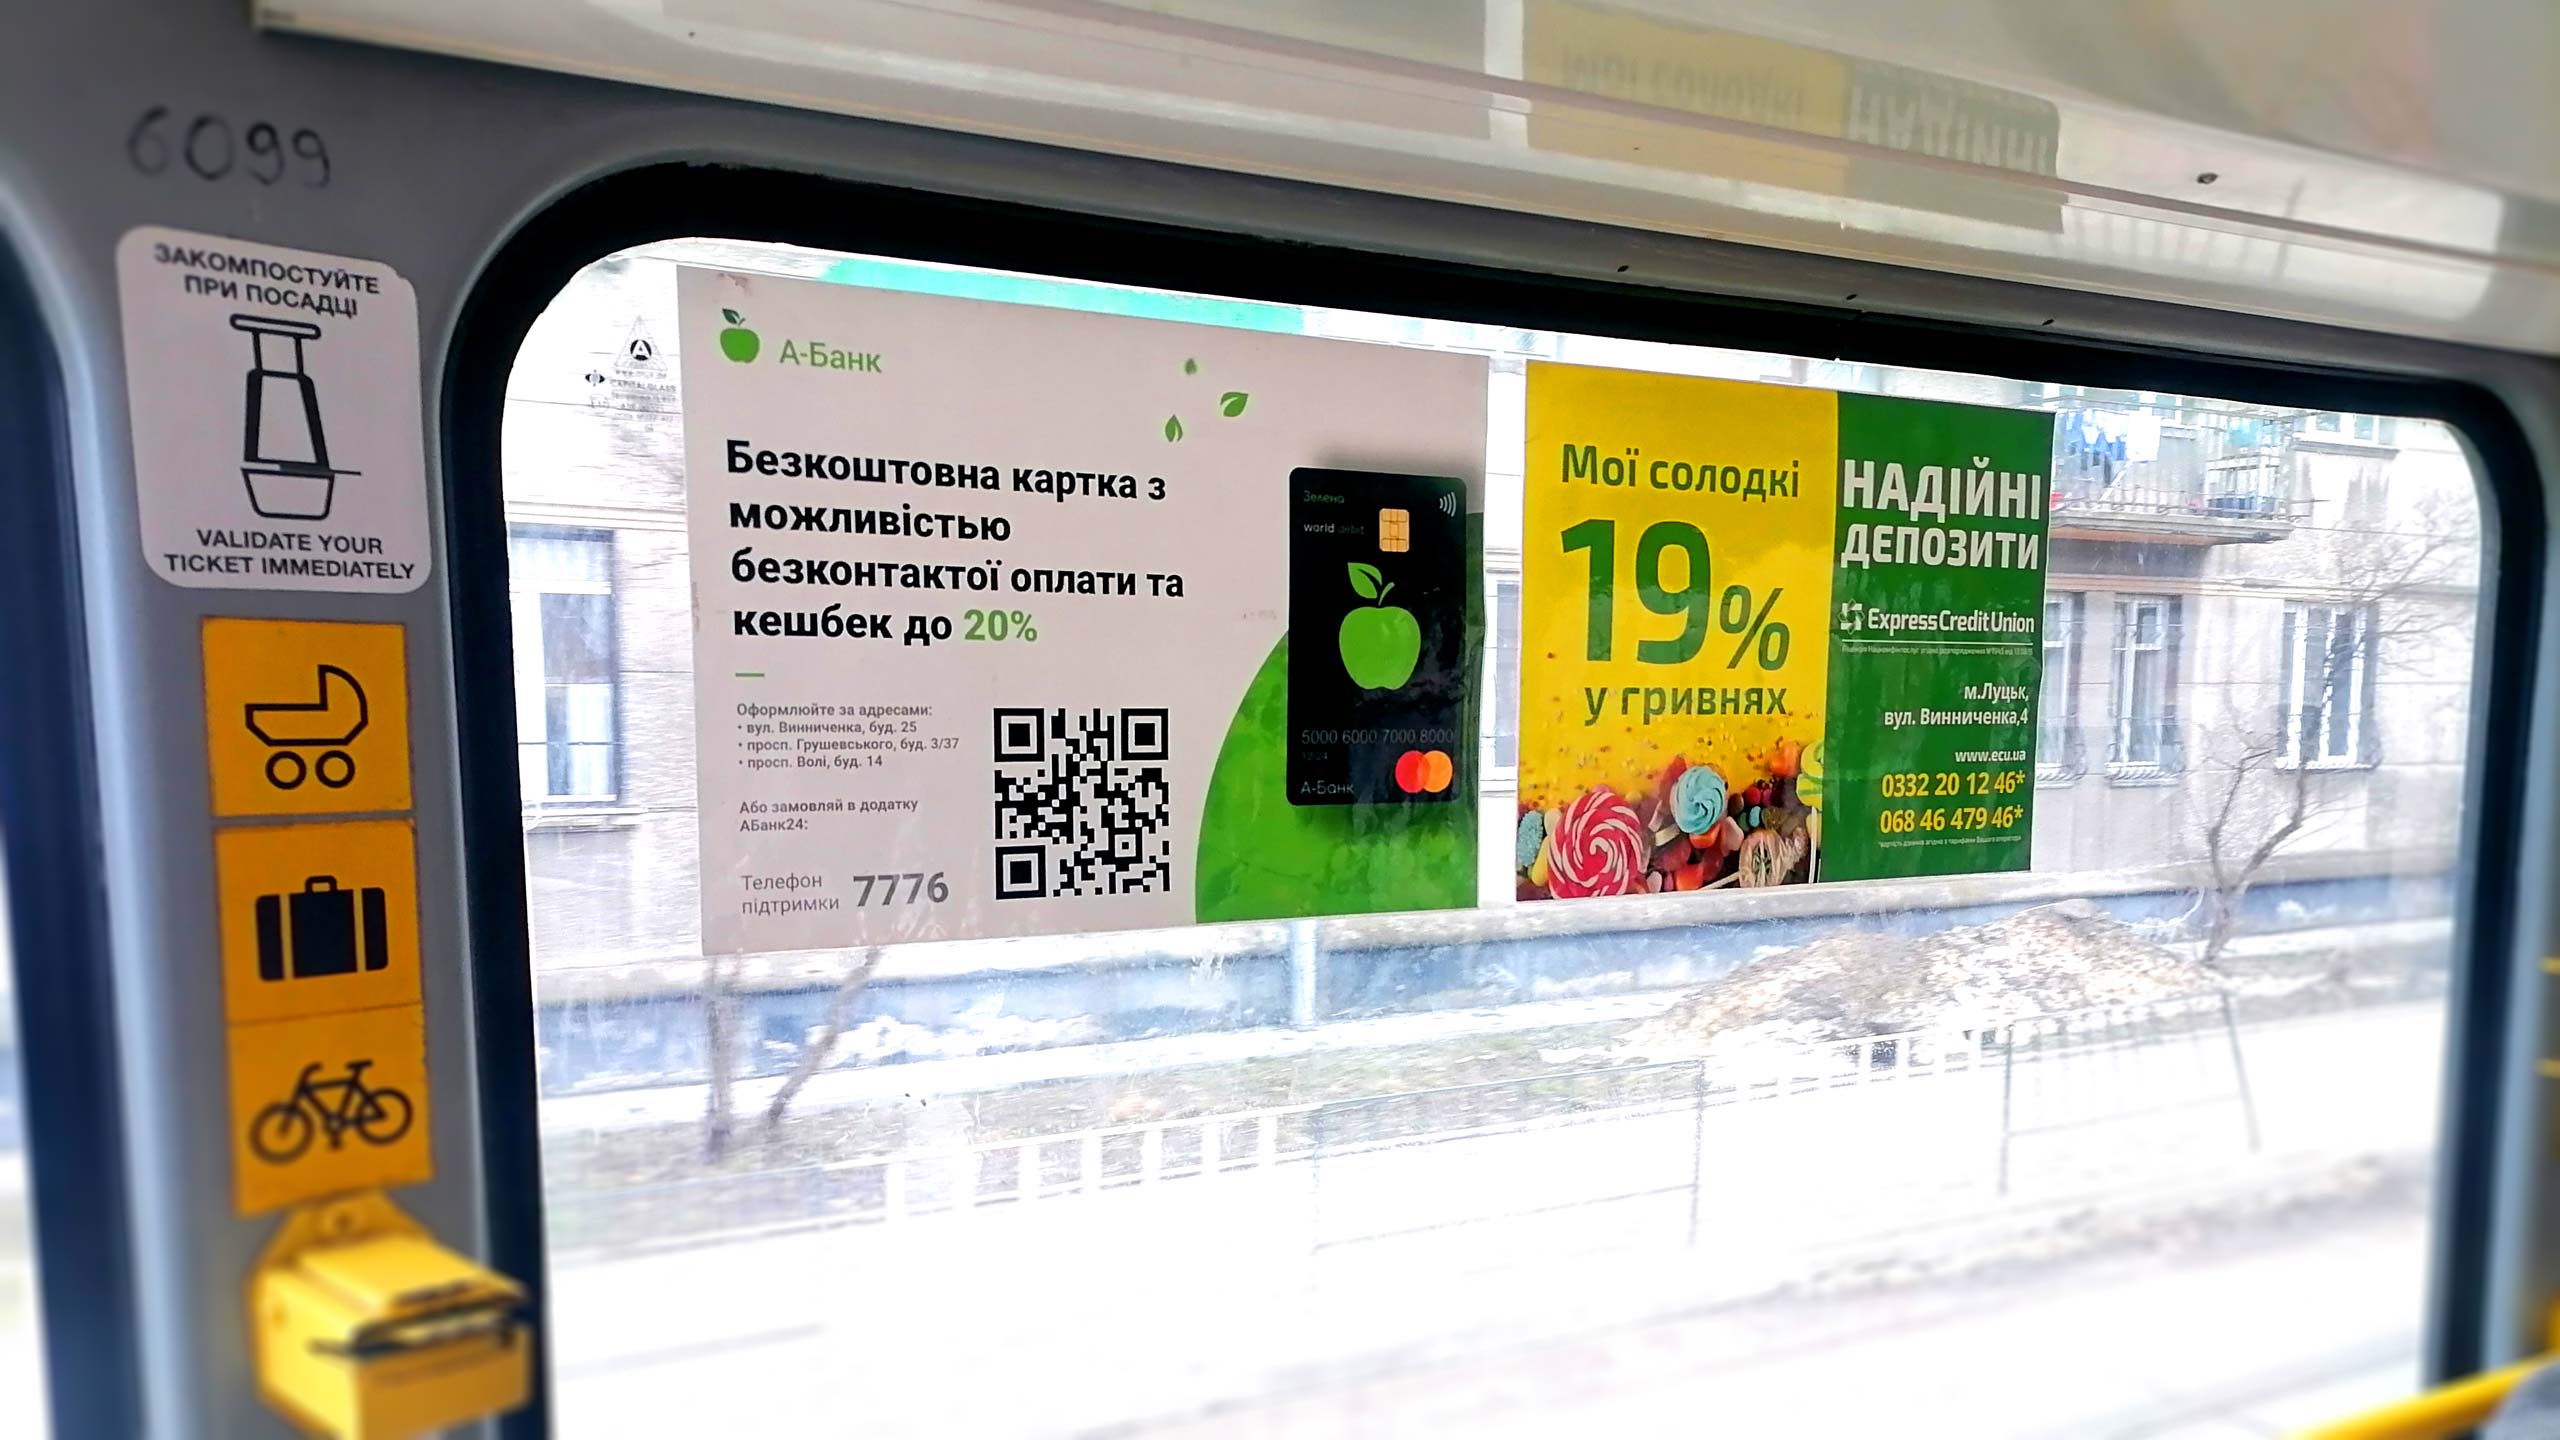 реклама днепродзержинск